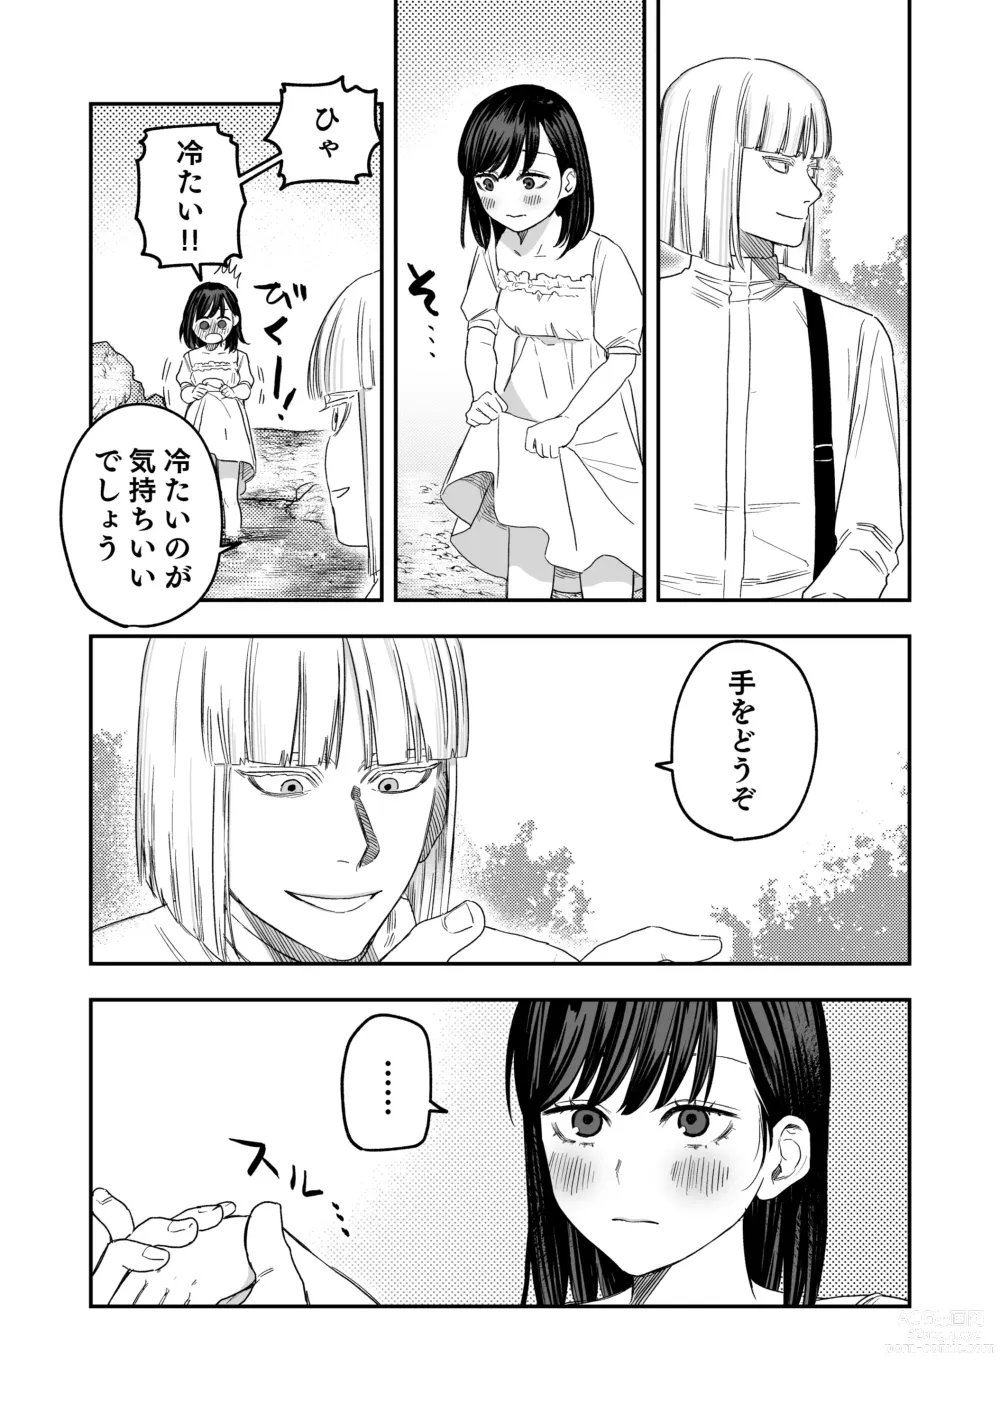 Page 7 of doujinshi Hachiroku Sou - Ieori to Hana Katajikena no Yome